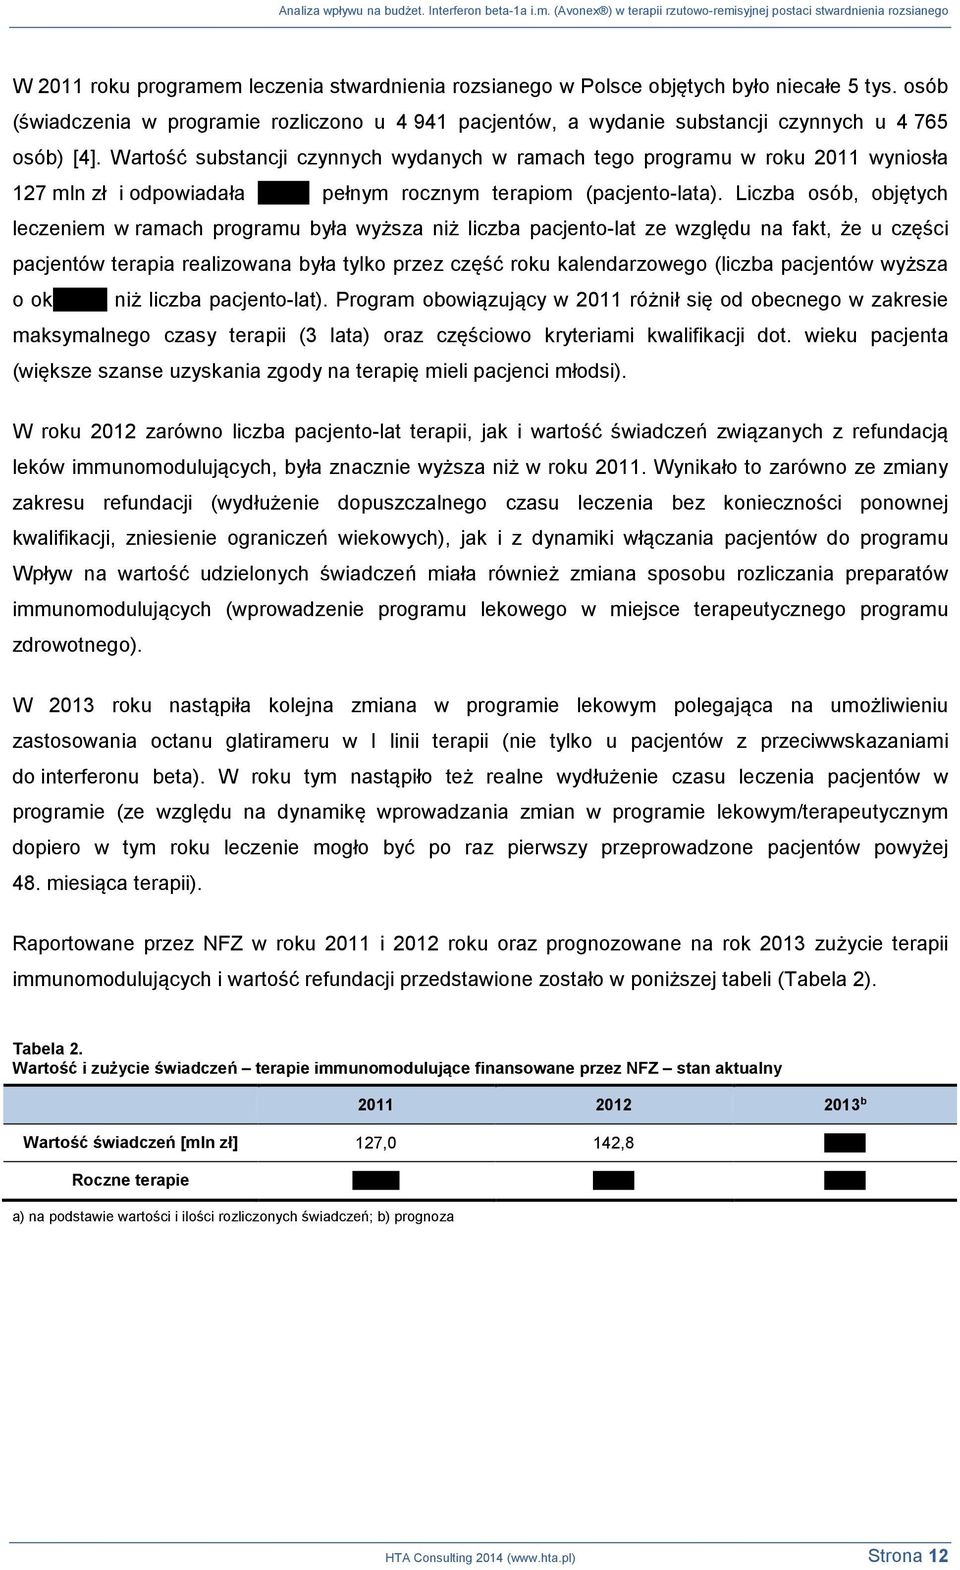 Wartość substancji czynnych wydanych w ramach tego programu w roku 2011 wyniosła 127 mln zł i odpowiadała pełnym rocznym terapiom (pacjento-lata).